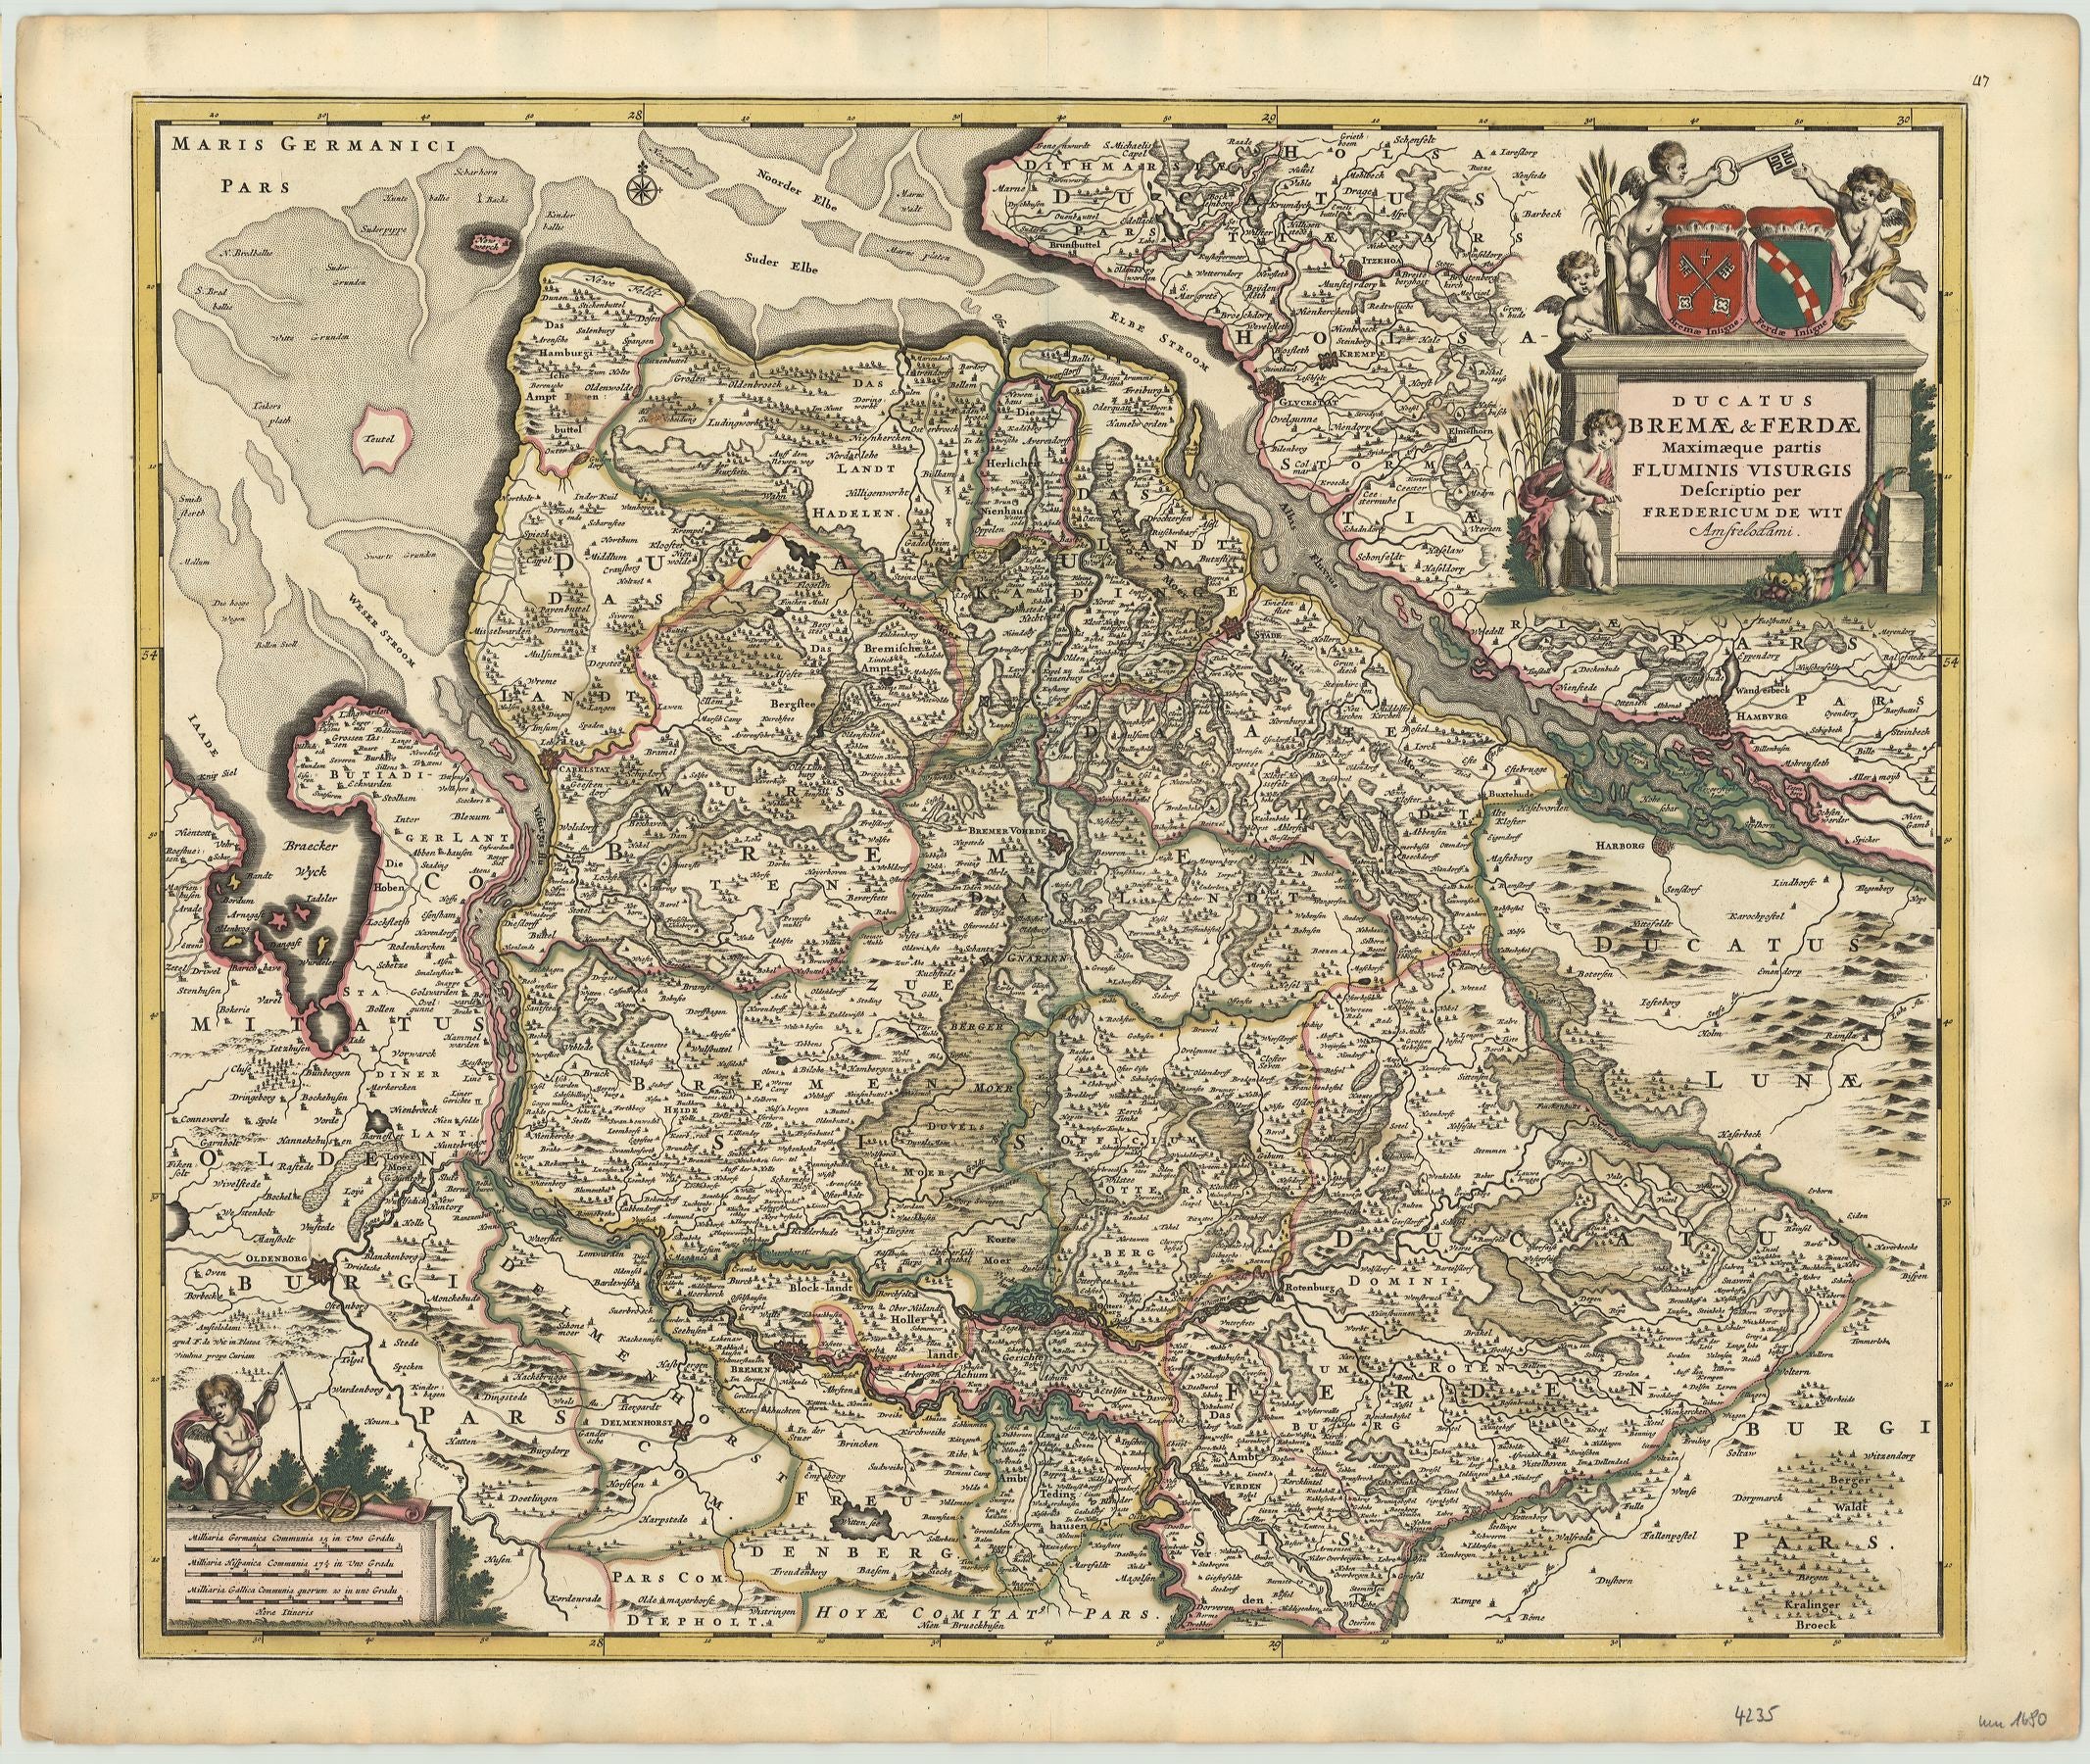 R2830 Wit, Frederic de: Ducatus Bremae & Ferdae Maximaeque partis Fluminis Visurgis Descriptio 1680